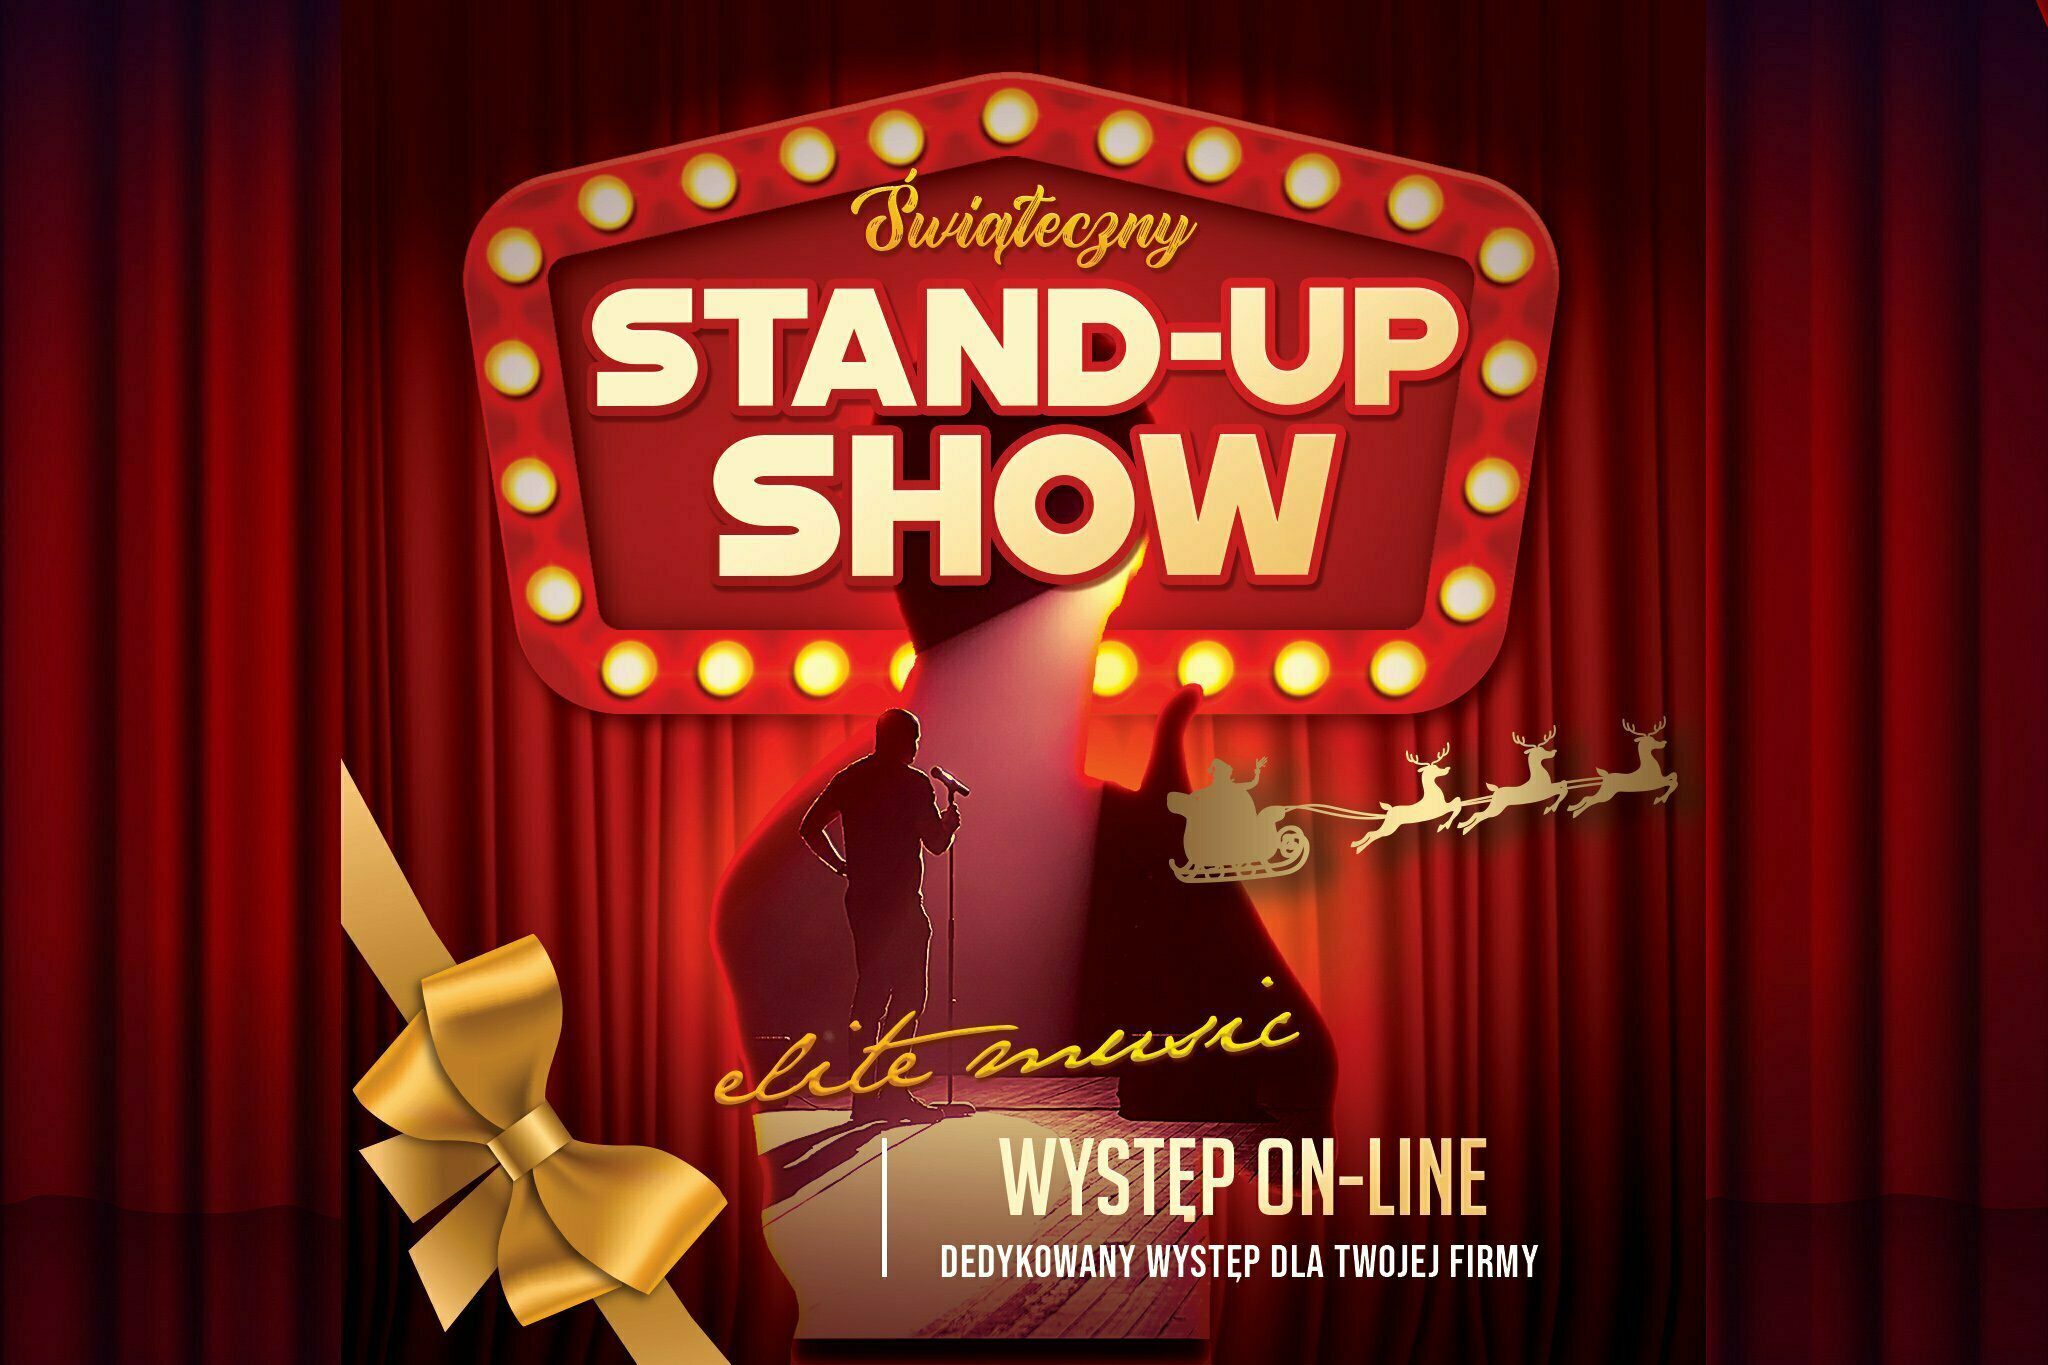 Świąteczny stand-up show - występ on-line